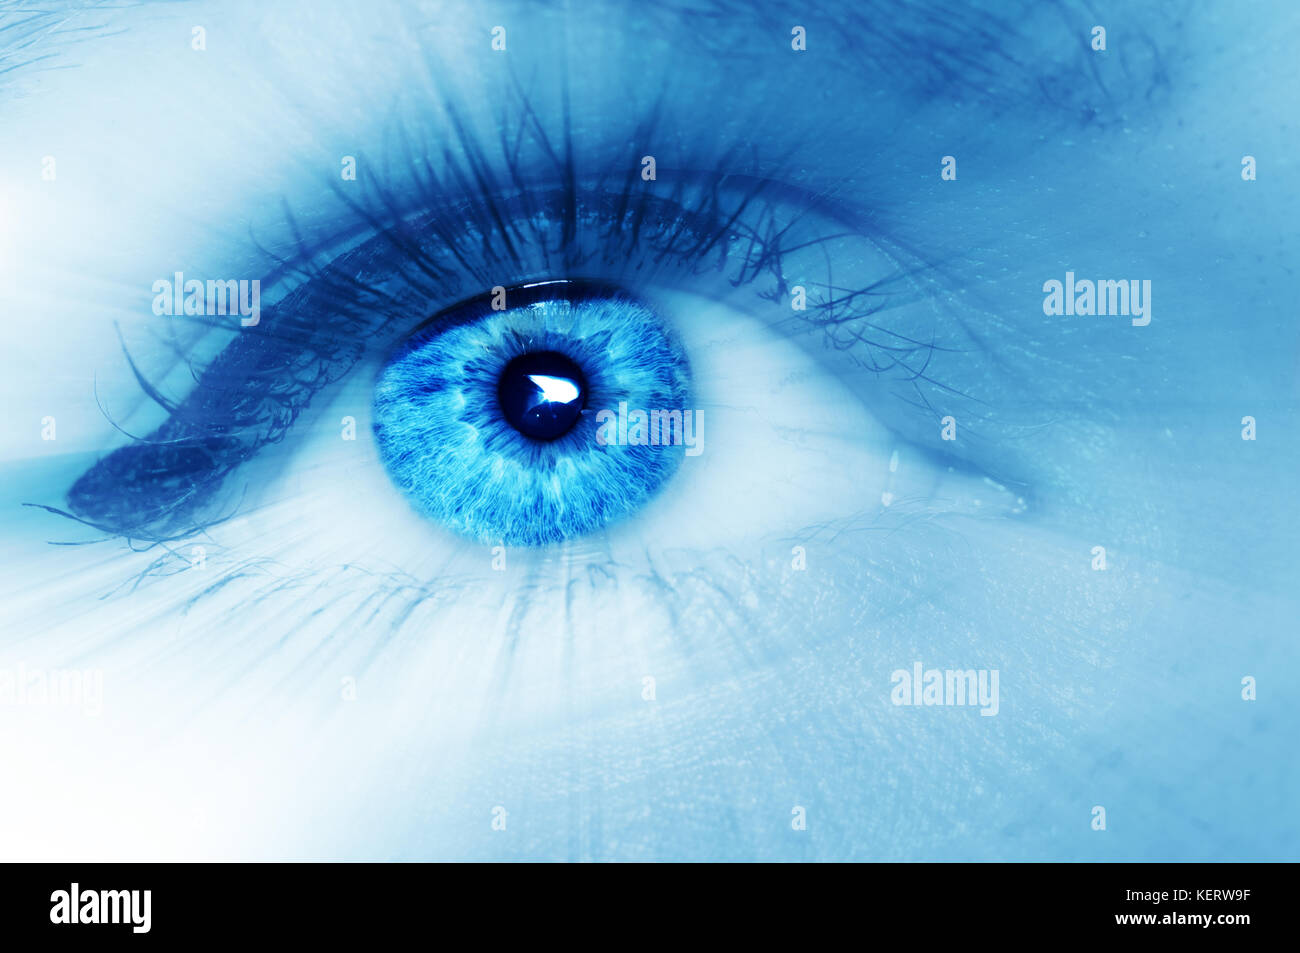 Belle blue eye con raggi divergenti in tutte le direzioni, abstract sognante immagine artistica. macro Foto Stock